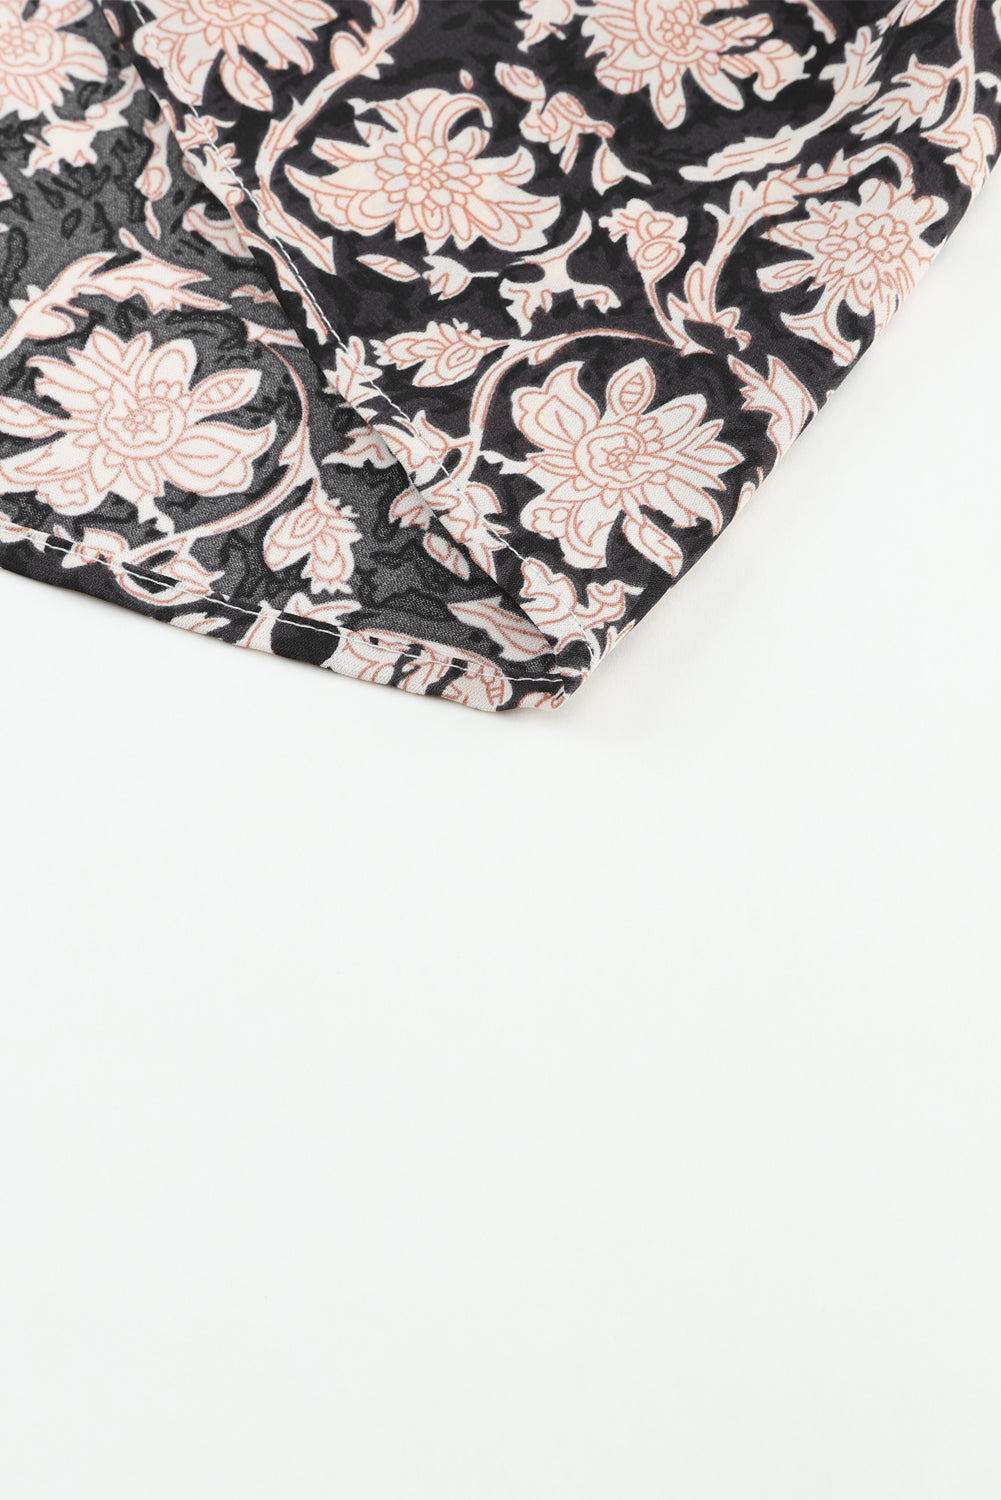 Črna bluza s cvetličnim potiskom z razcepljenim ovratnikom in naborki z napihnjenimi rokavi